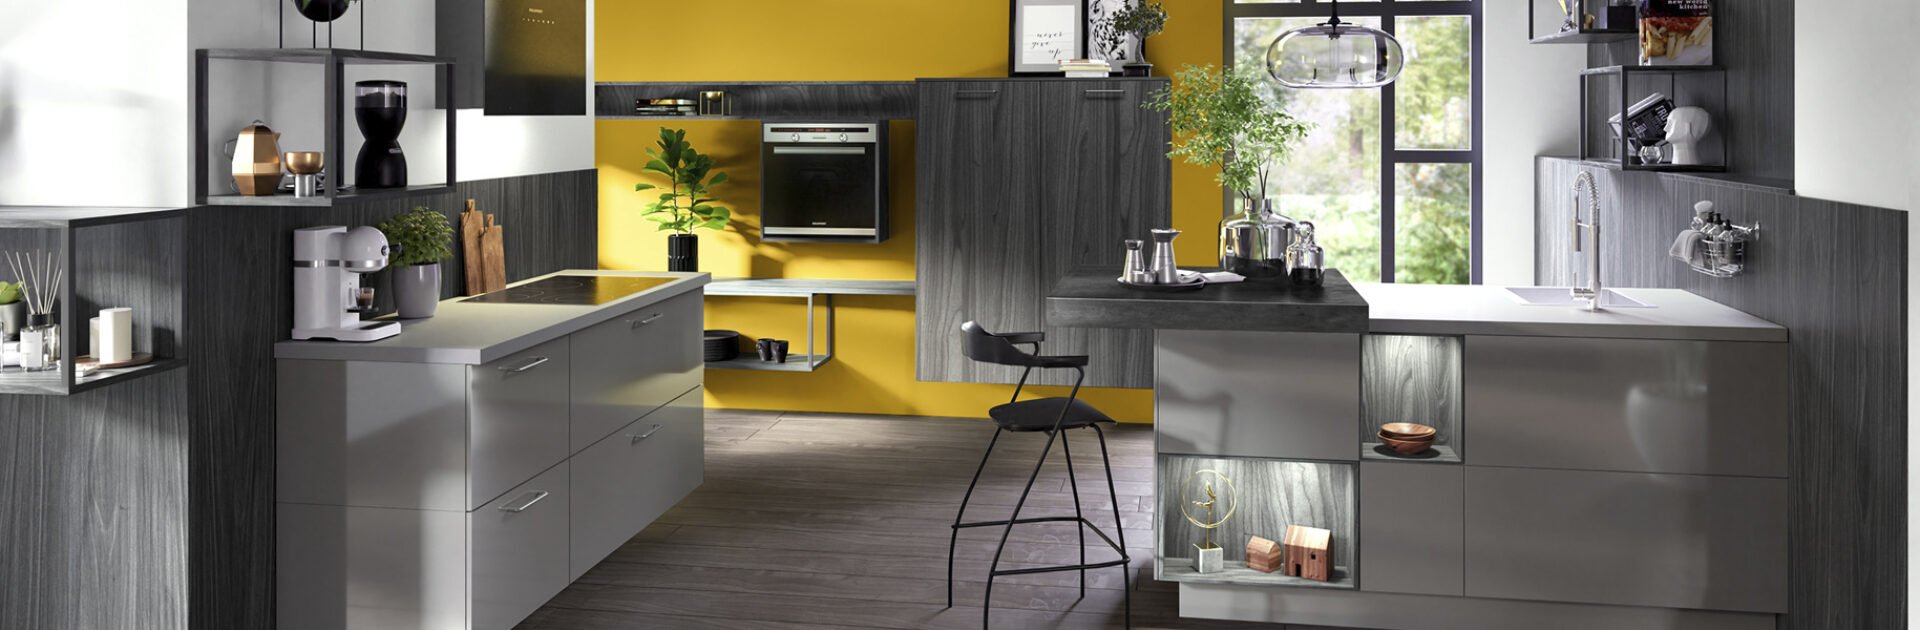 Keukens in RAL-kleuren | Eigenhuis Keukens